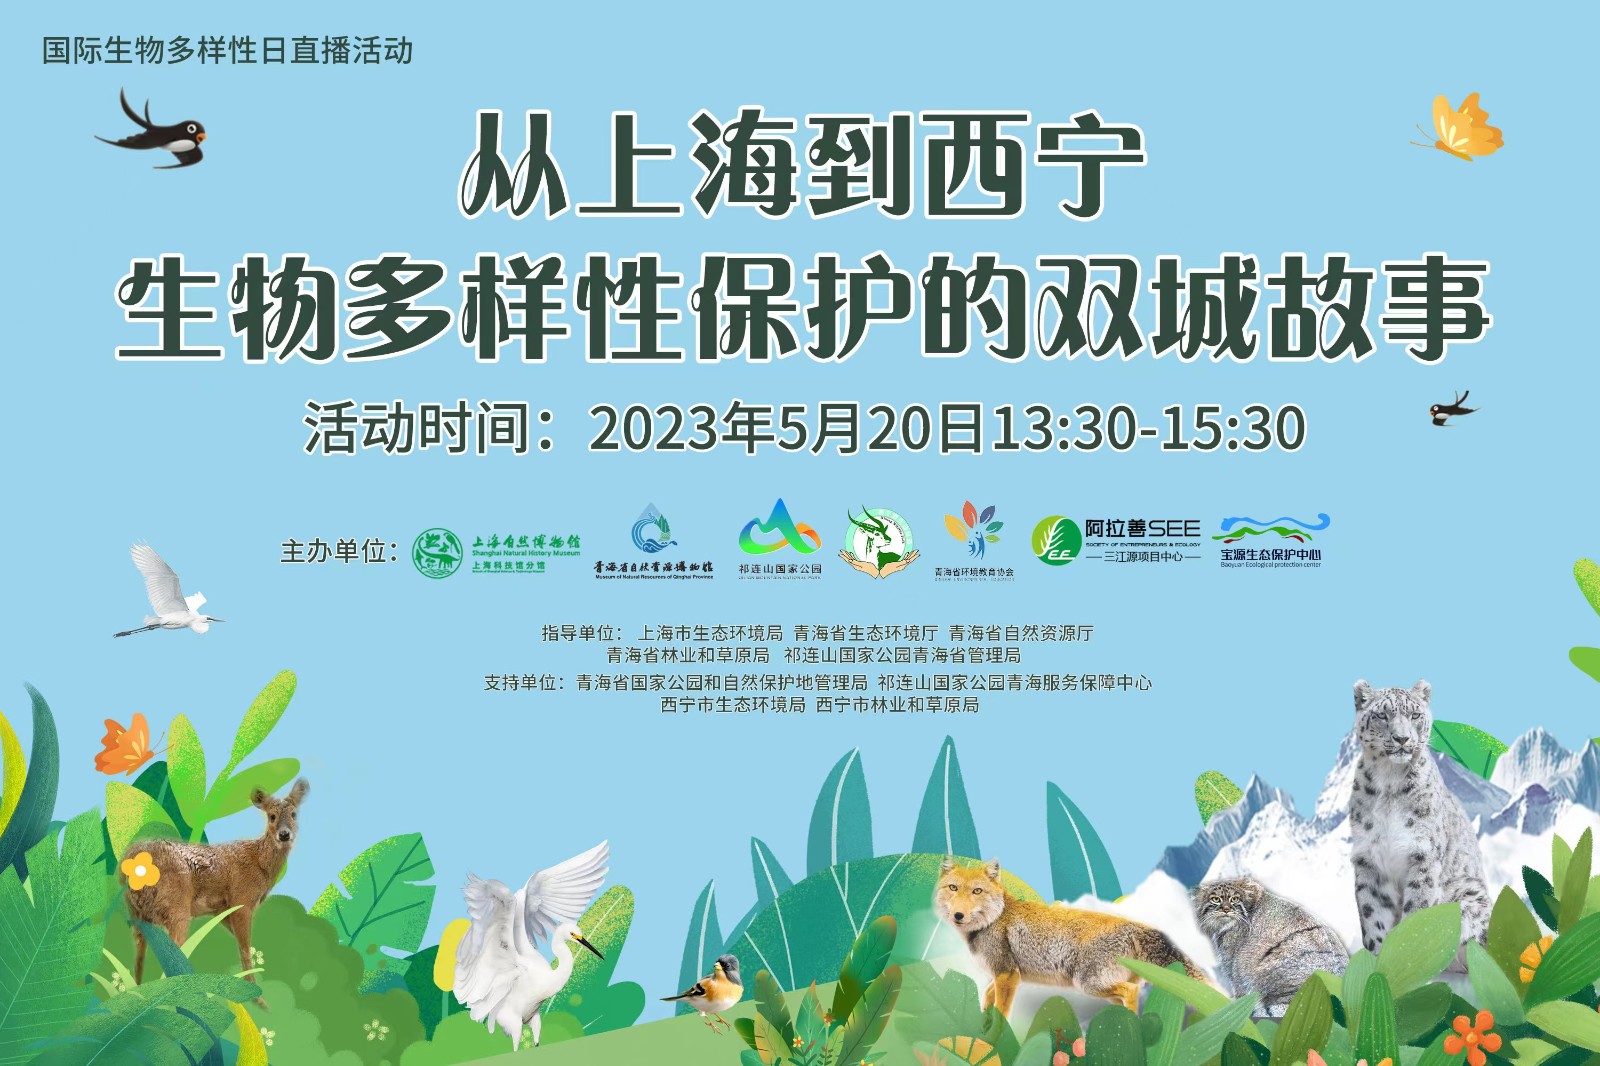 从上海到西宁——讲述生物多样性保护的“双城故事”